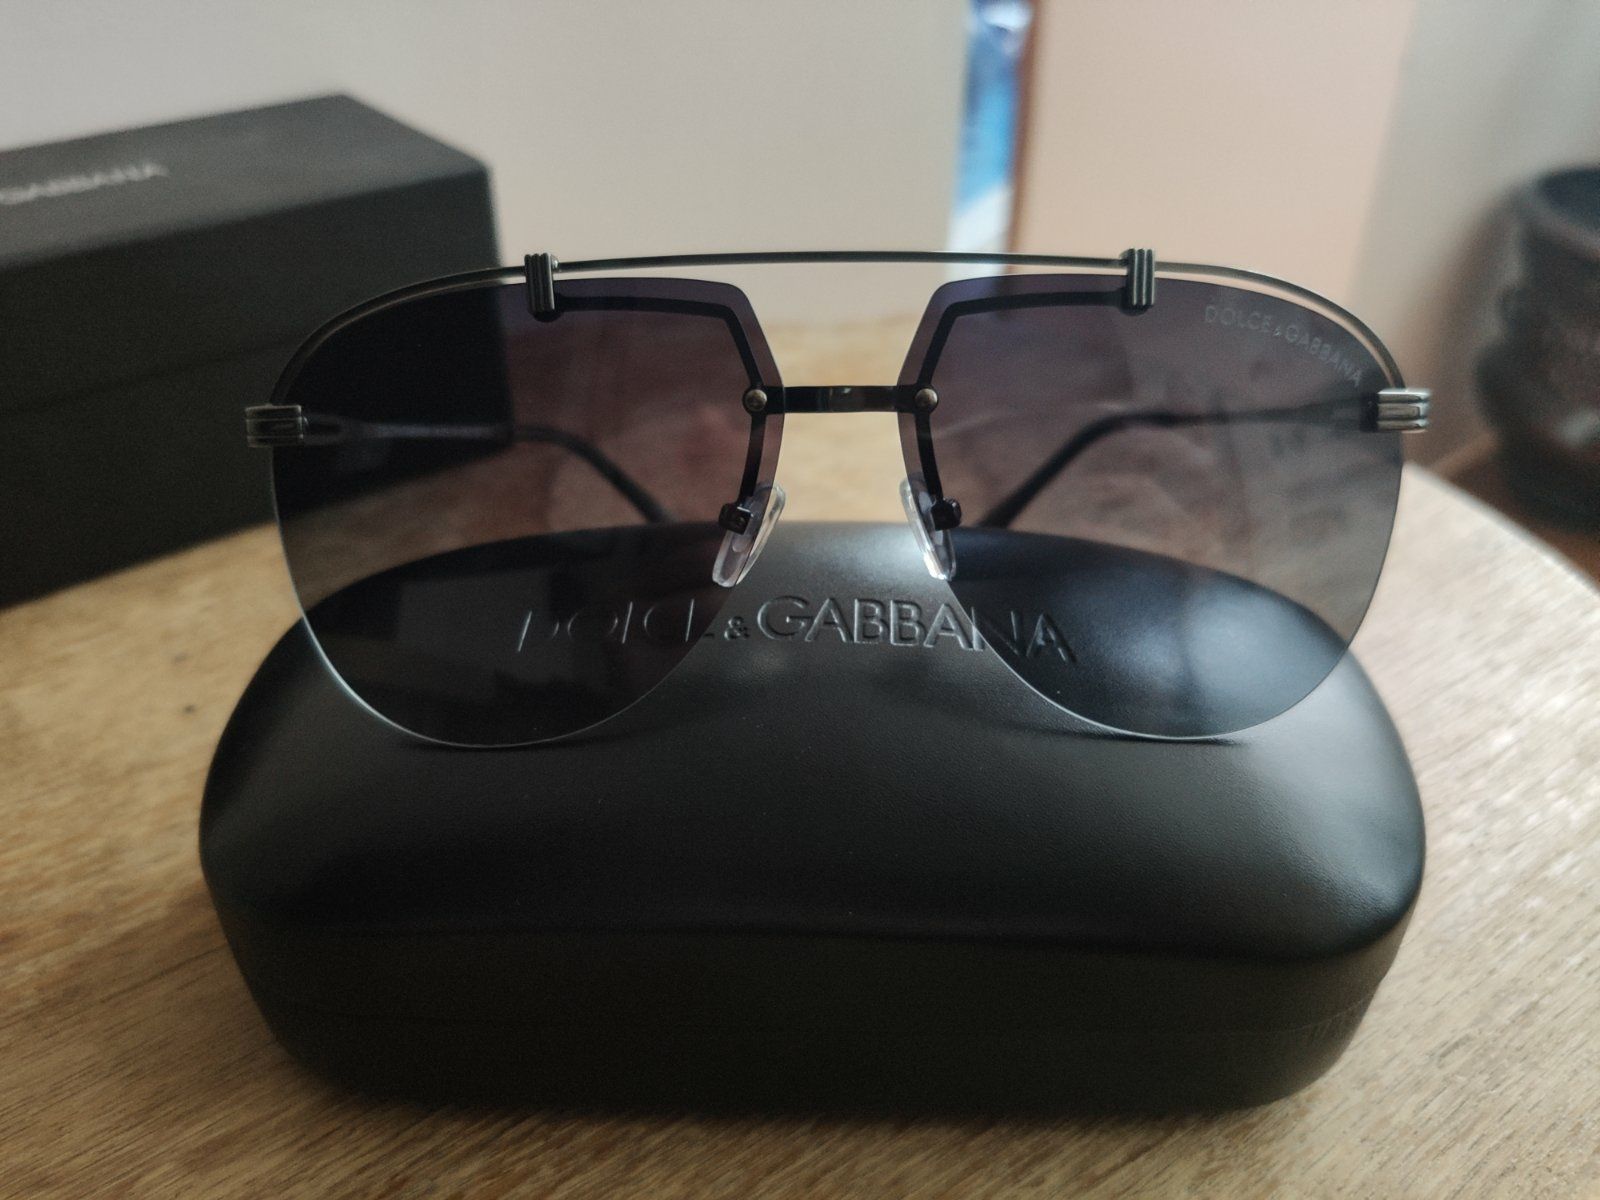 Dolce Gabbana очки